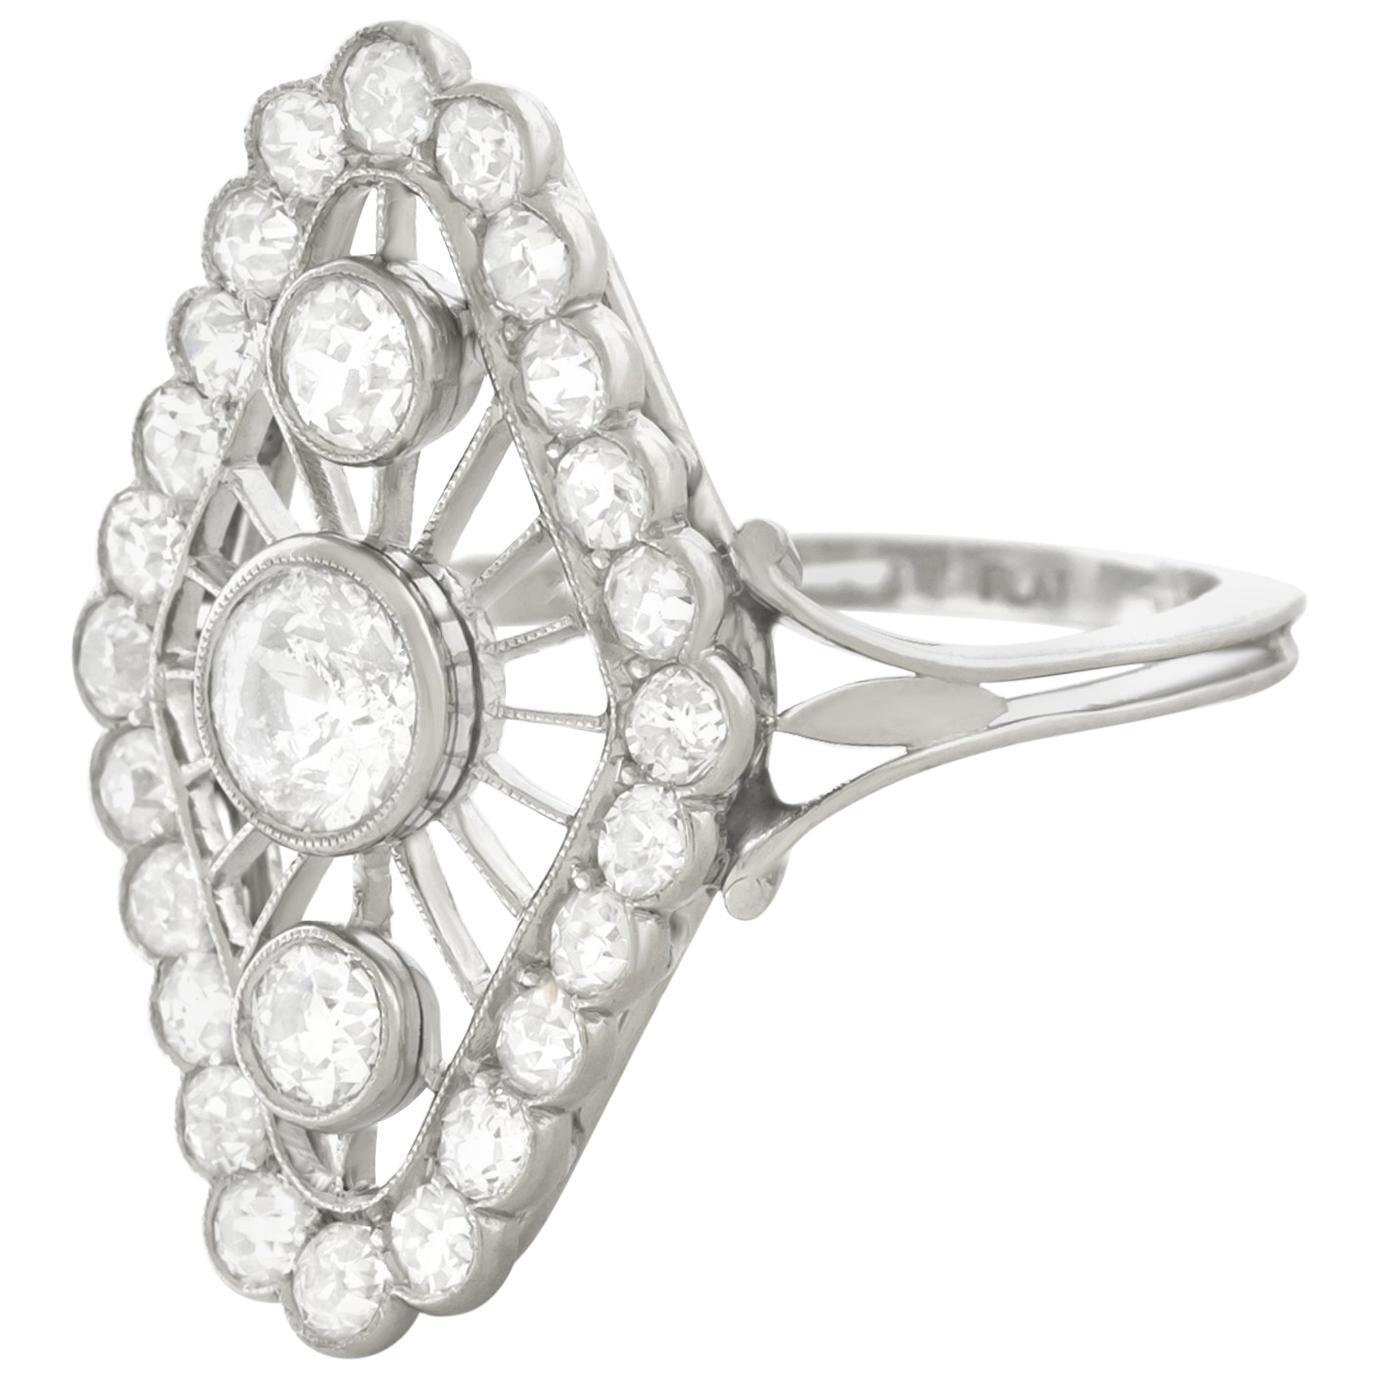 Art Deco Diamond set Platinum Ring